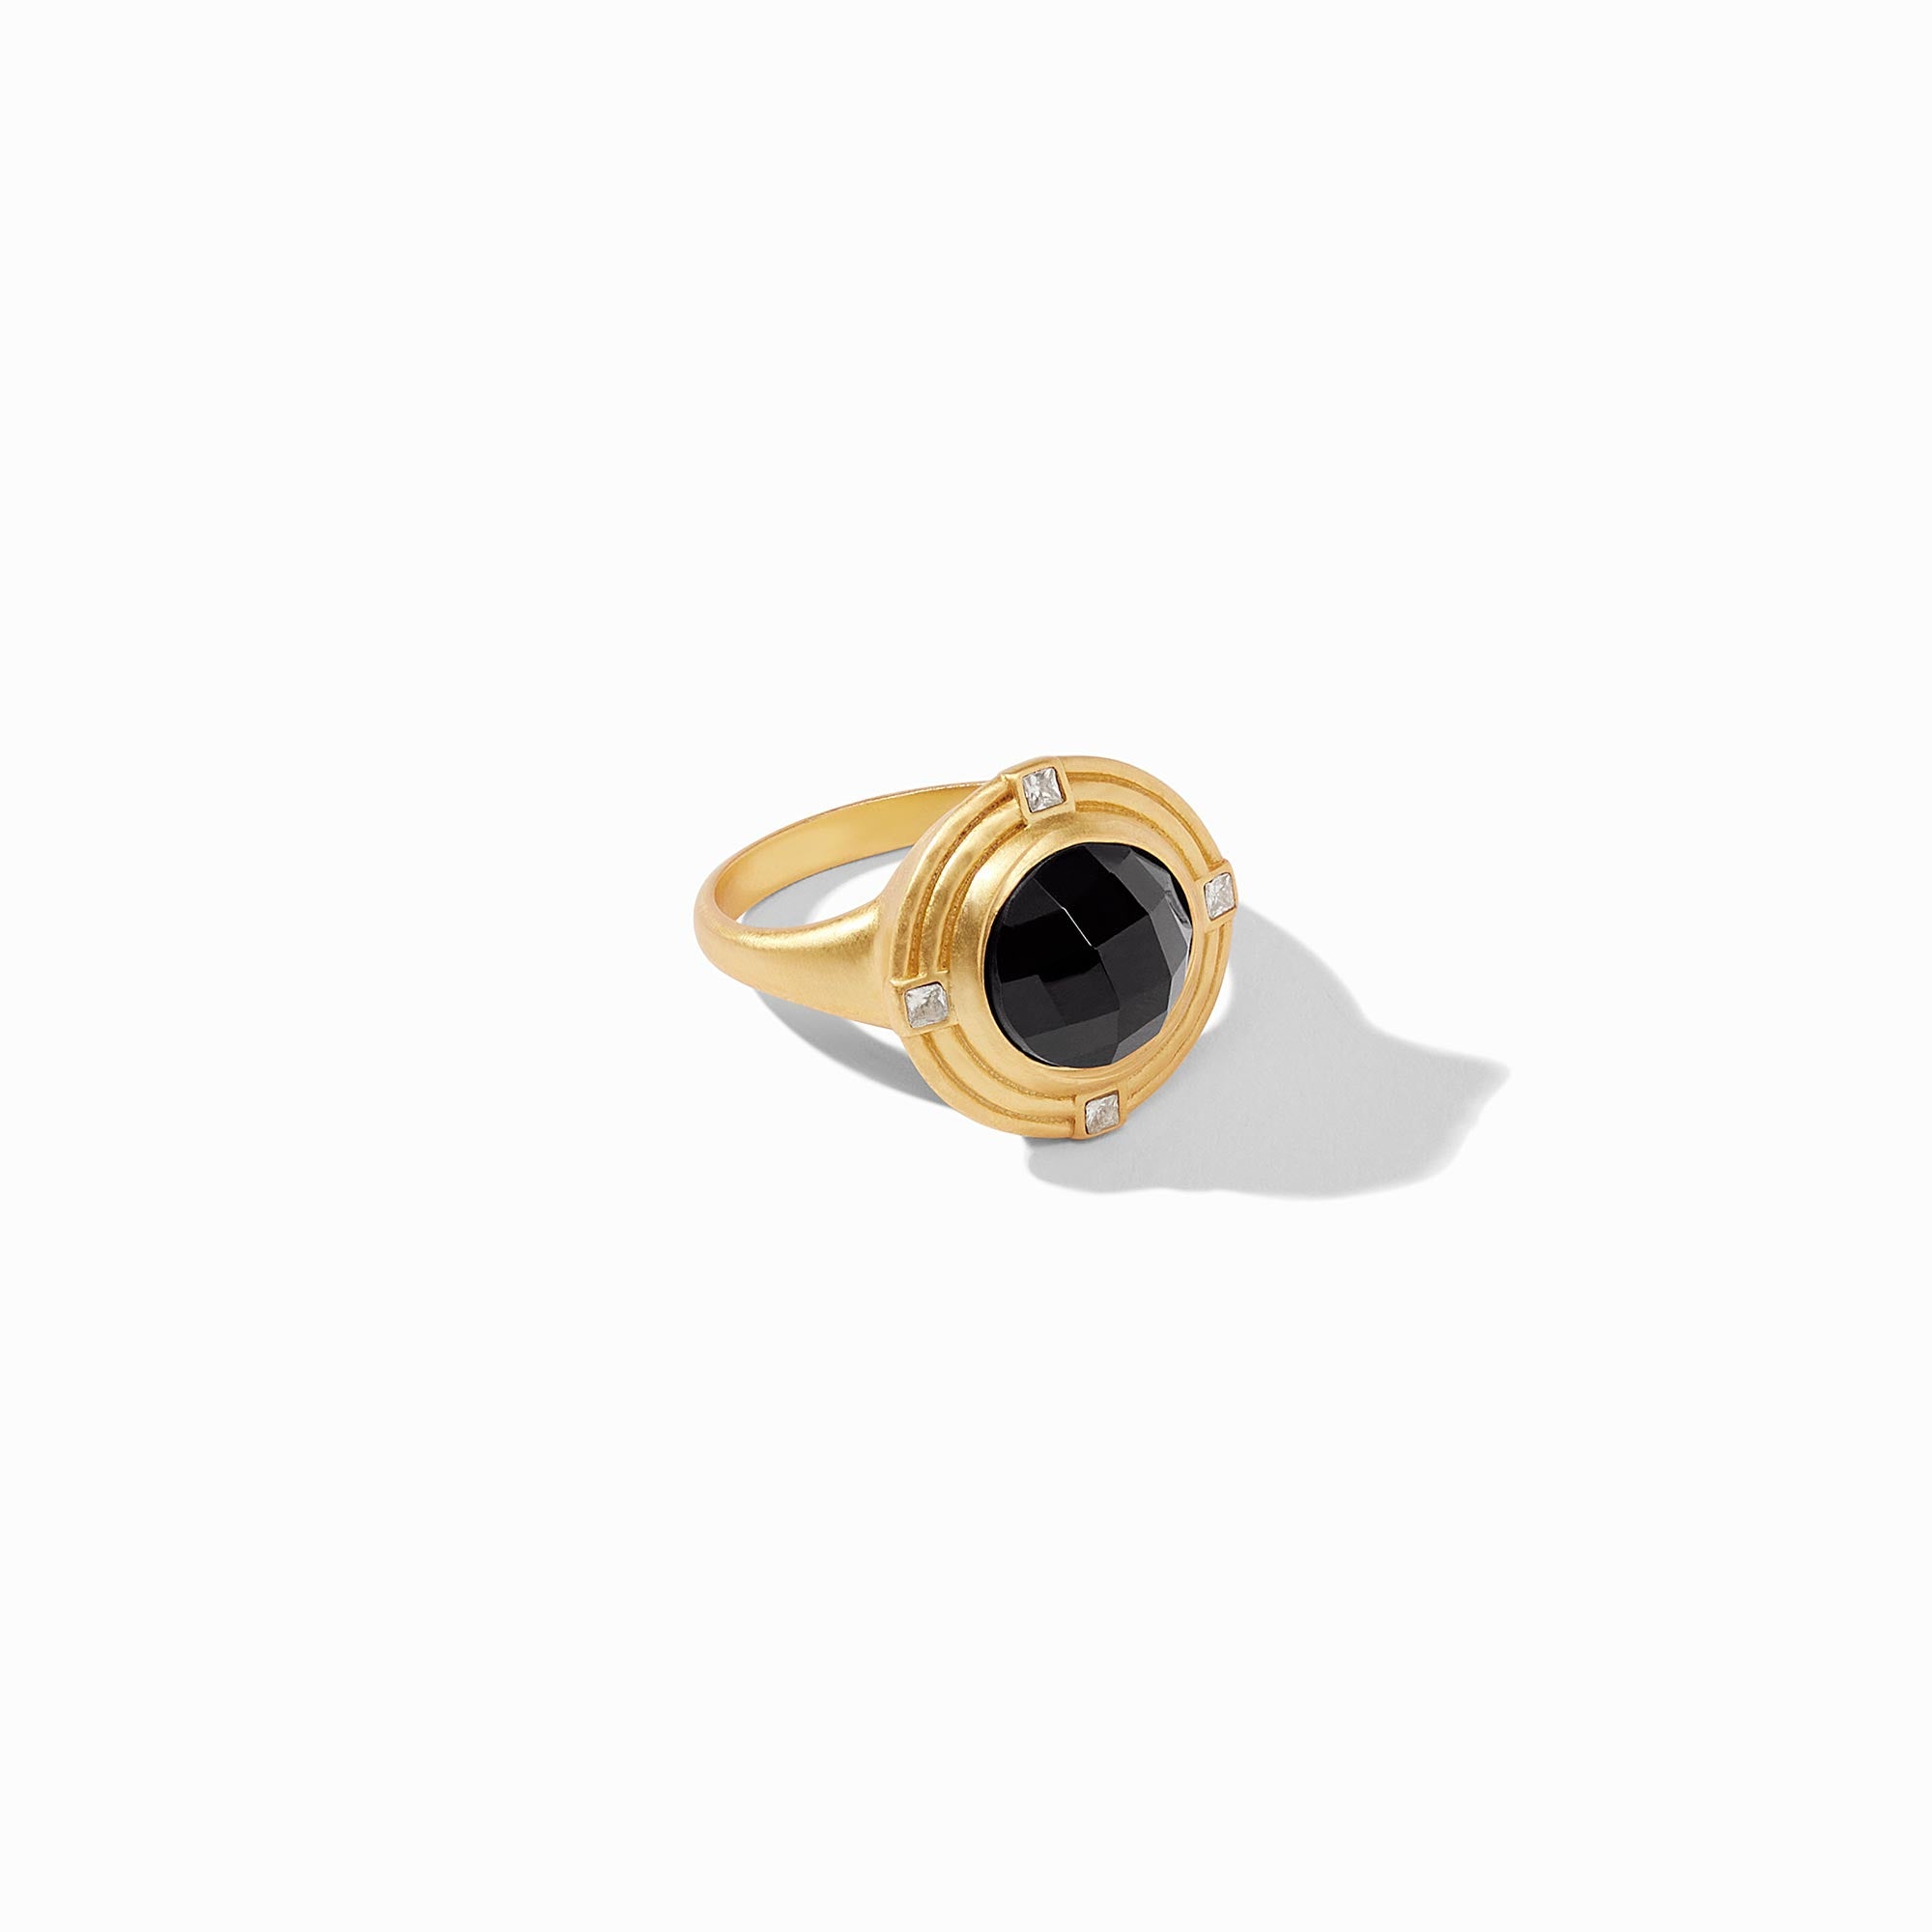 Julie Vos - Astor Ring, Obsidian Black / 8